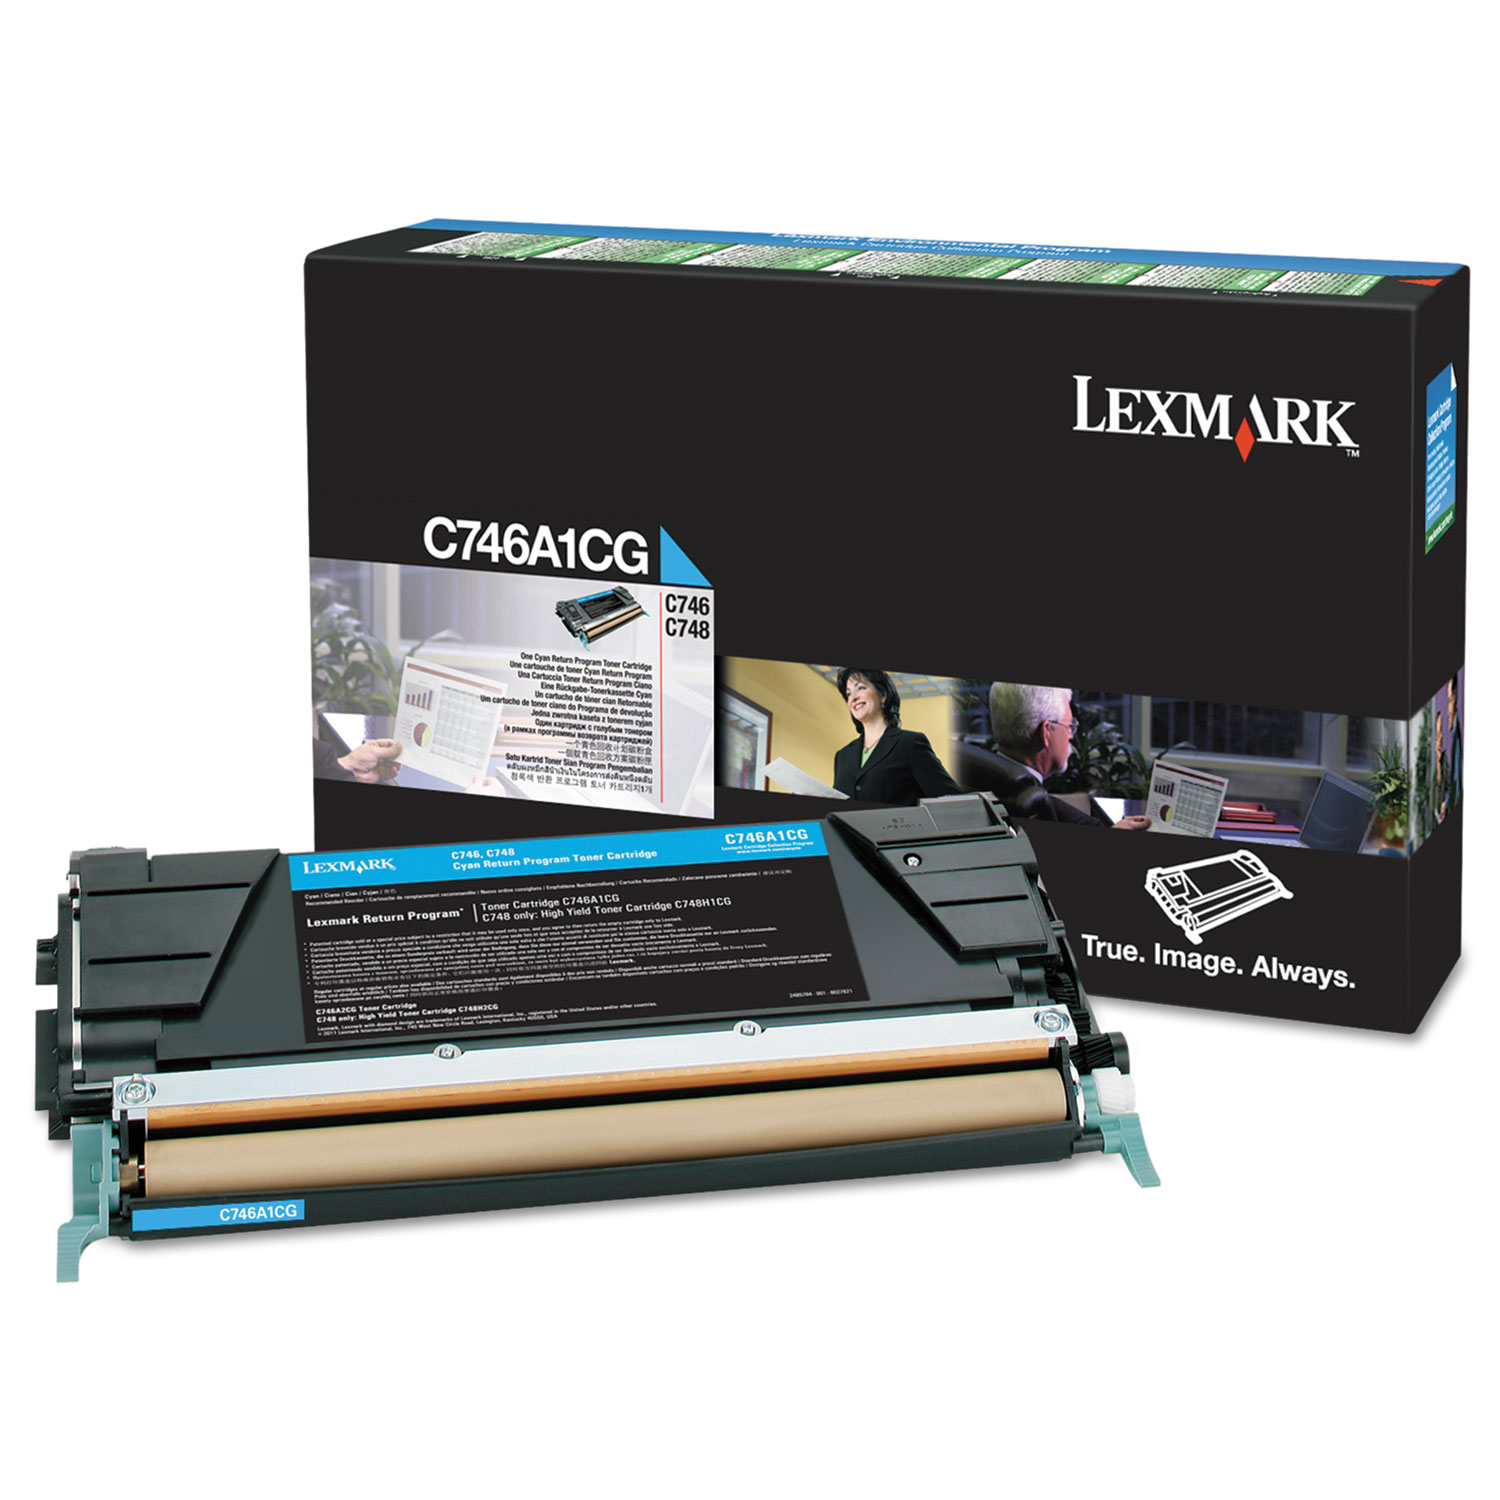  Lexmark C746A1CG C746A1CG Return Program Toner, 7000 Page-Yield, Cyan (LEXC746A1CG) 